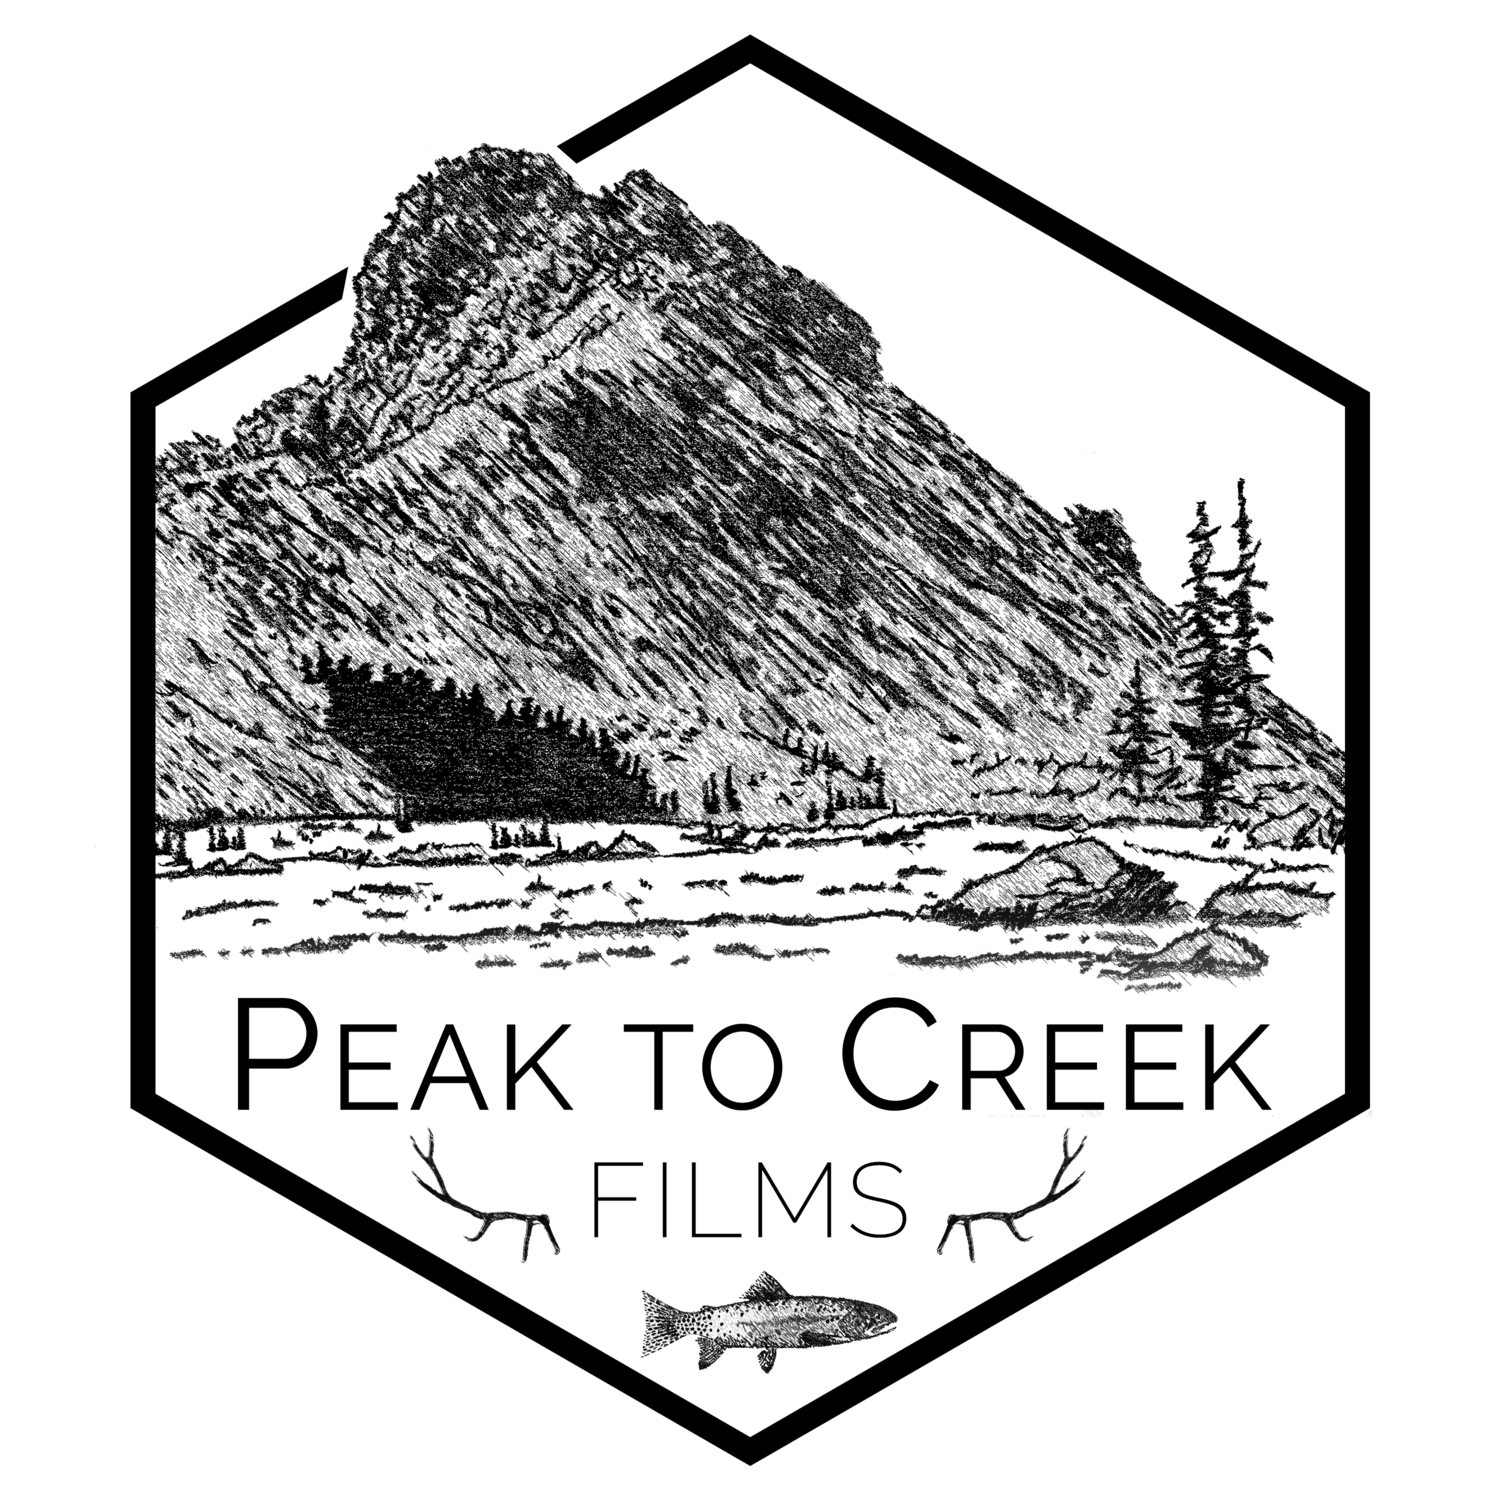 Peak to Creek Films